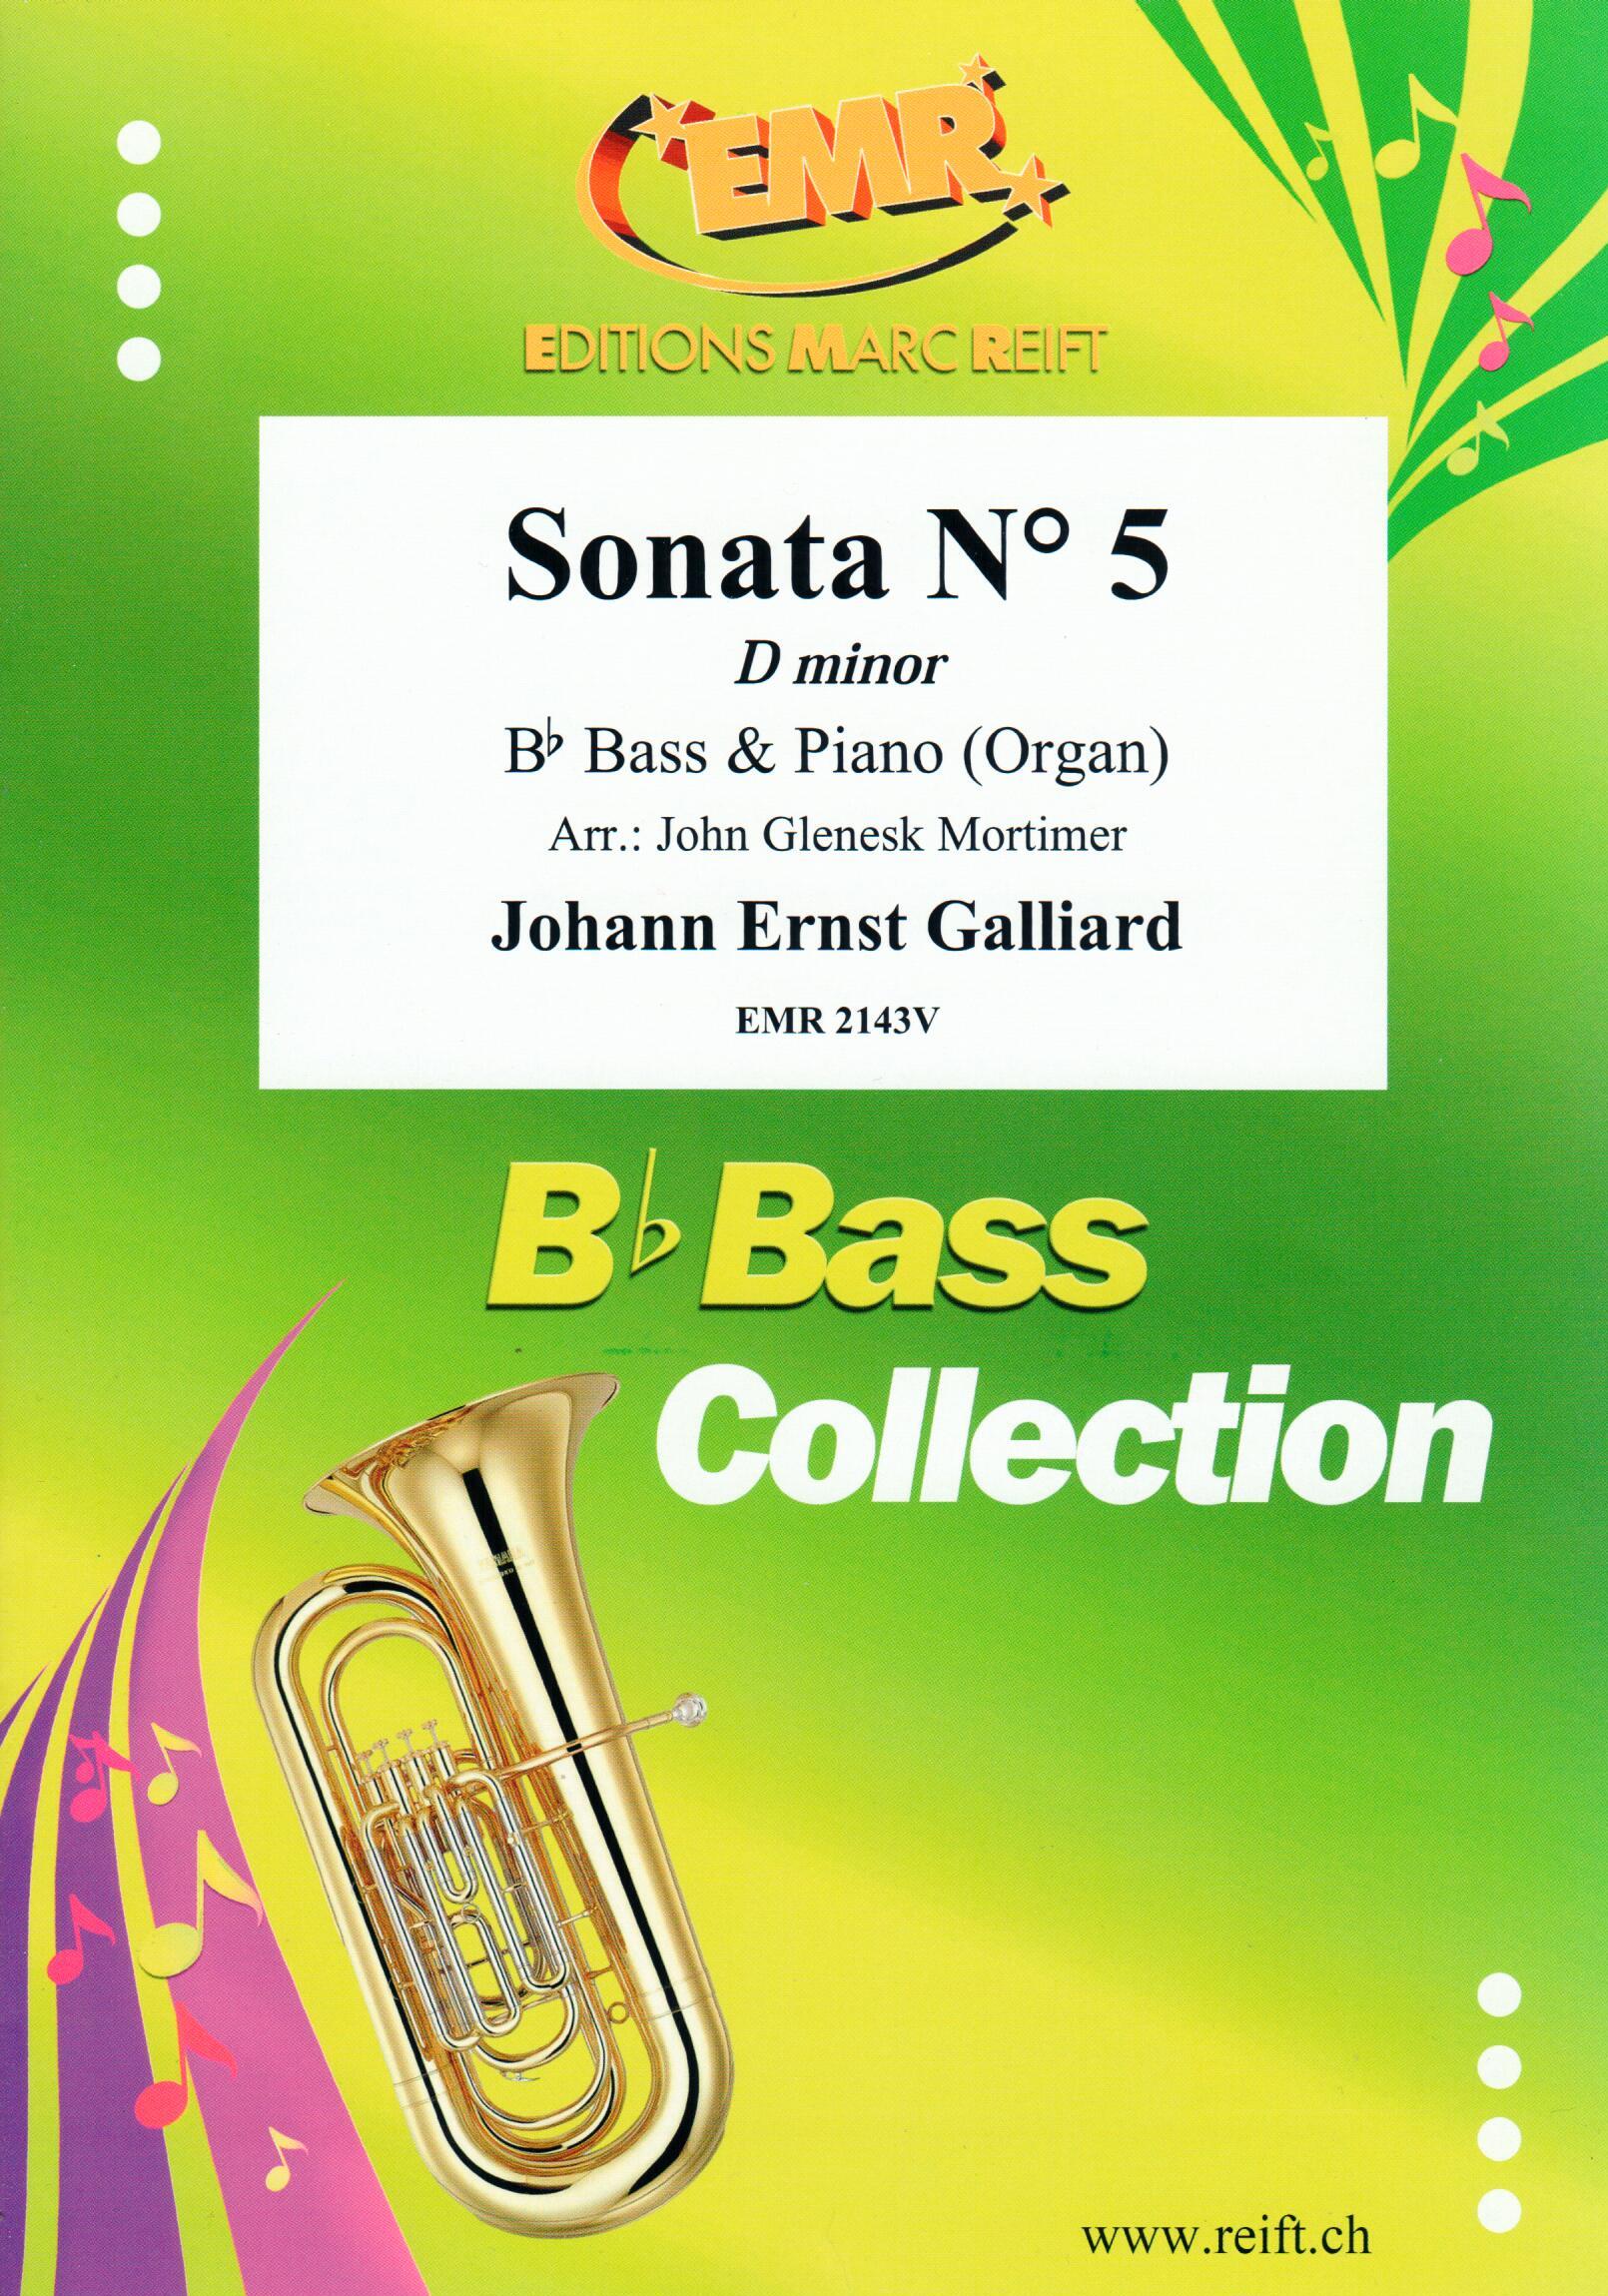 SONATA N° 5 IN D MINOR, SOLOS - E♭. Bass